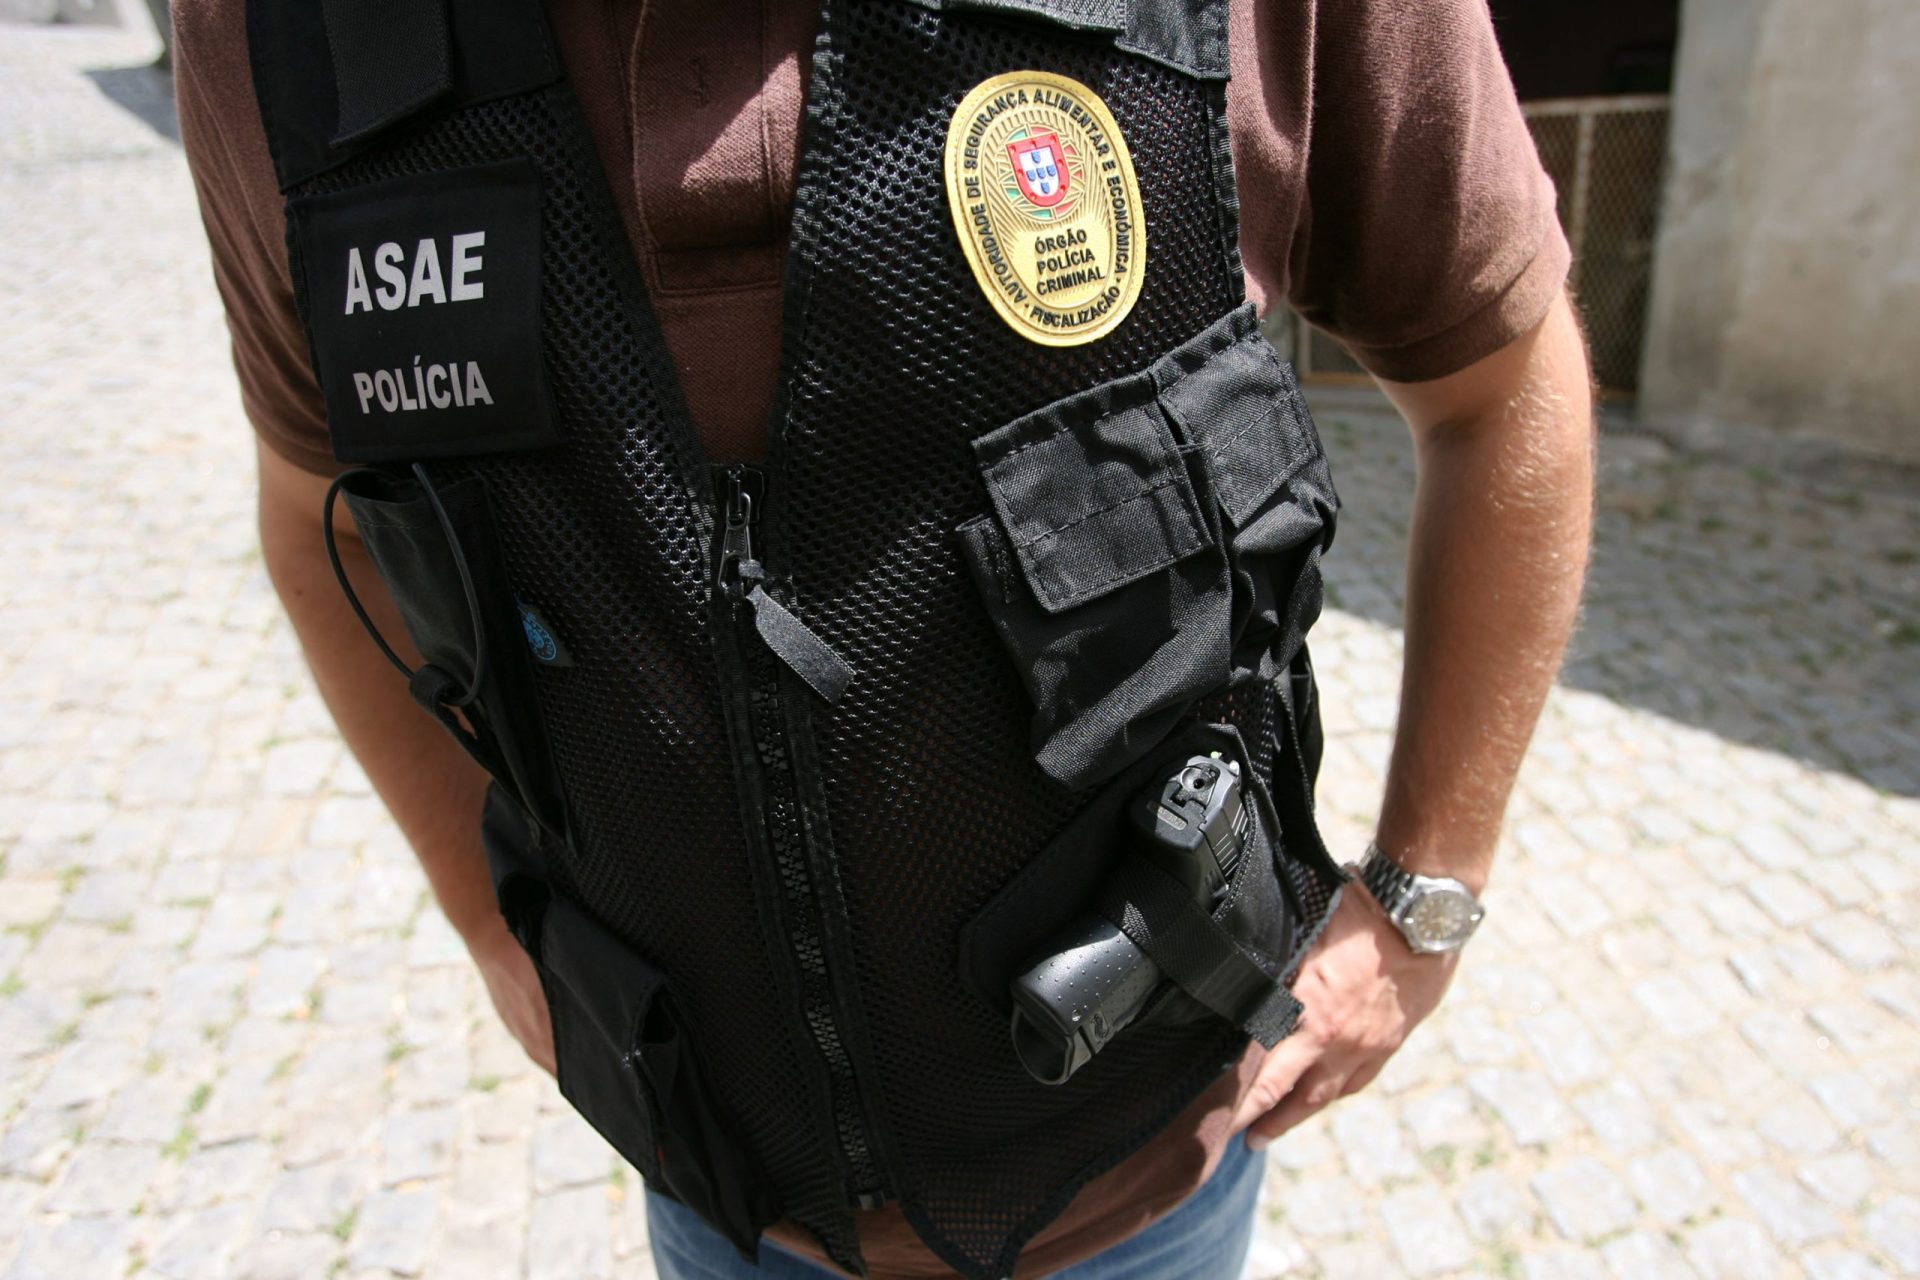 ASAE encerra estabelecimento ilegal com mais de 400 clientes em Santiago do Cacém